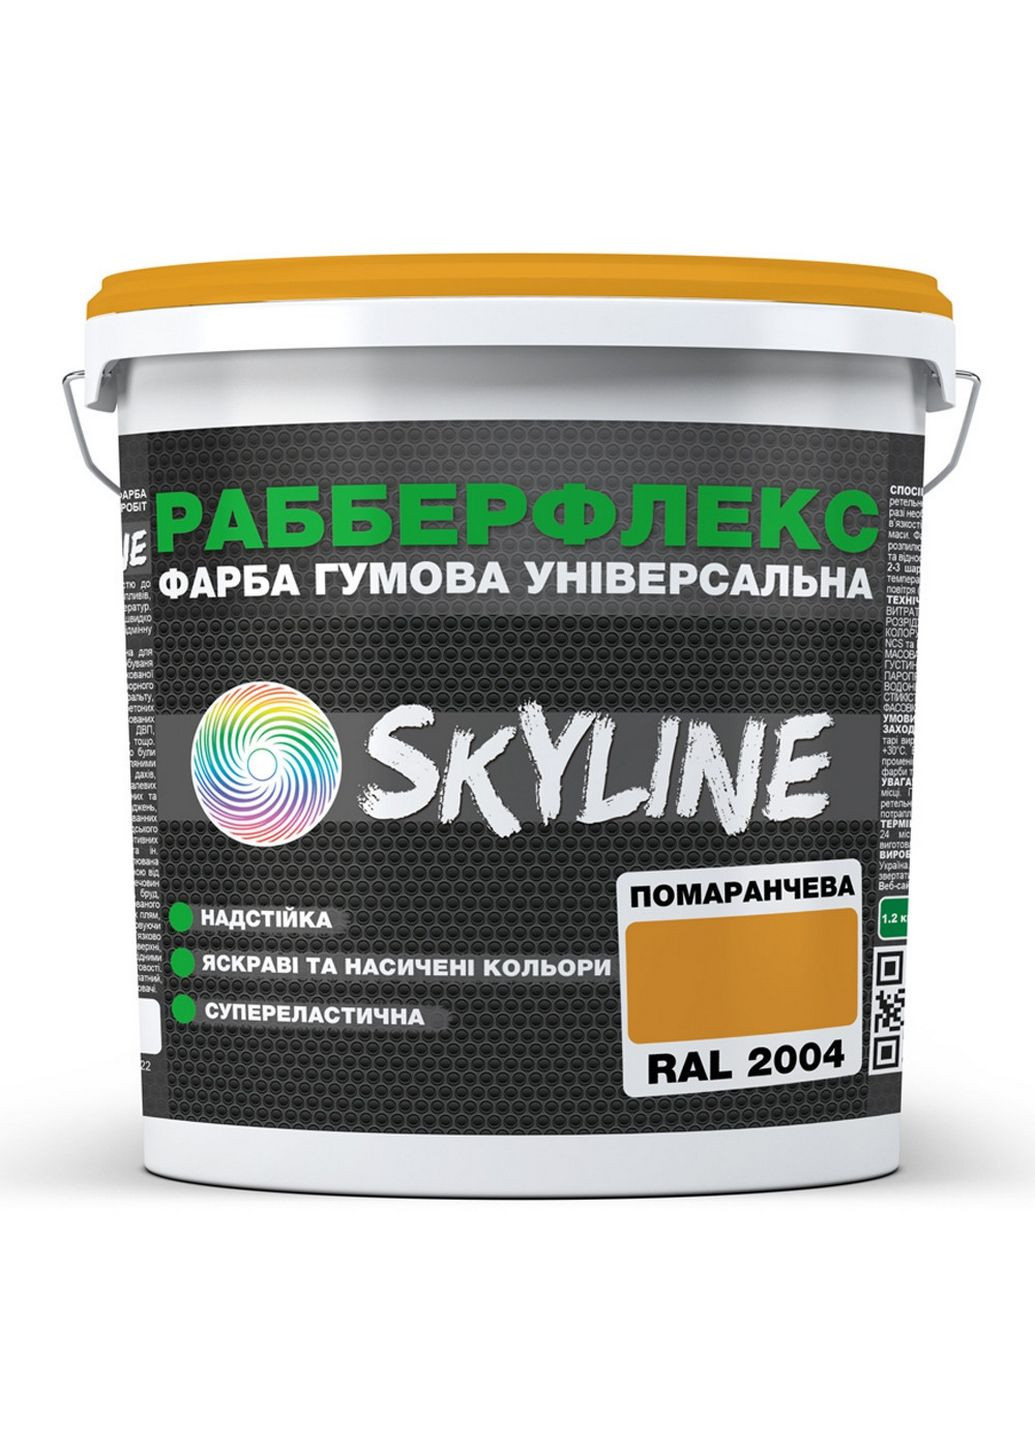 Надстійка фарба гумова супереластична «РабберФлекс» 12 кг SkyLine (289459185)